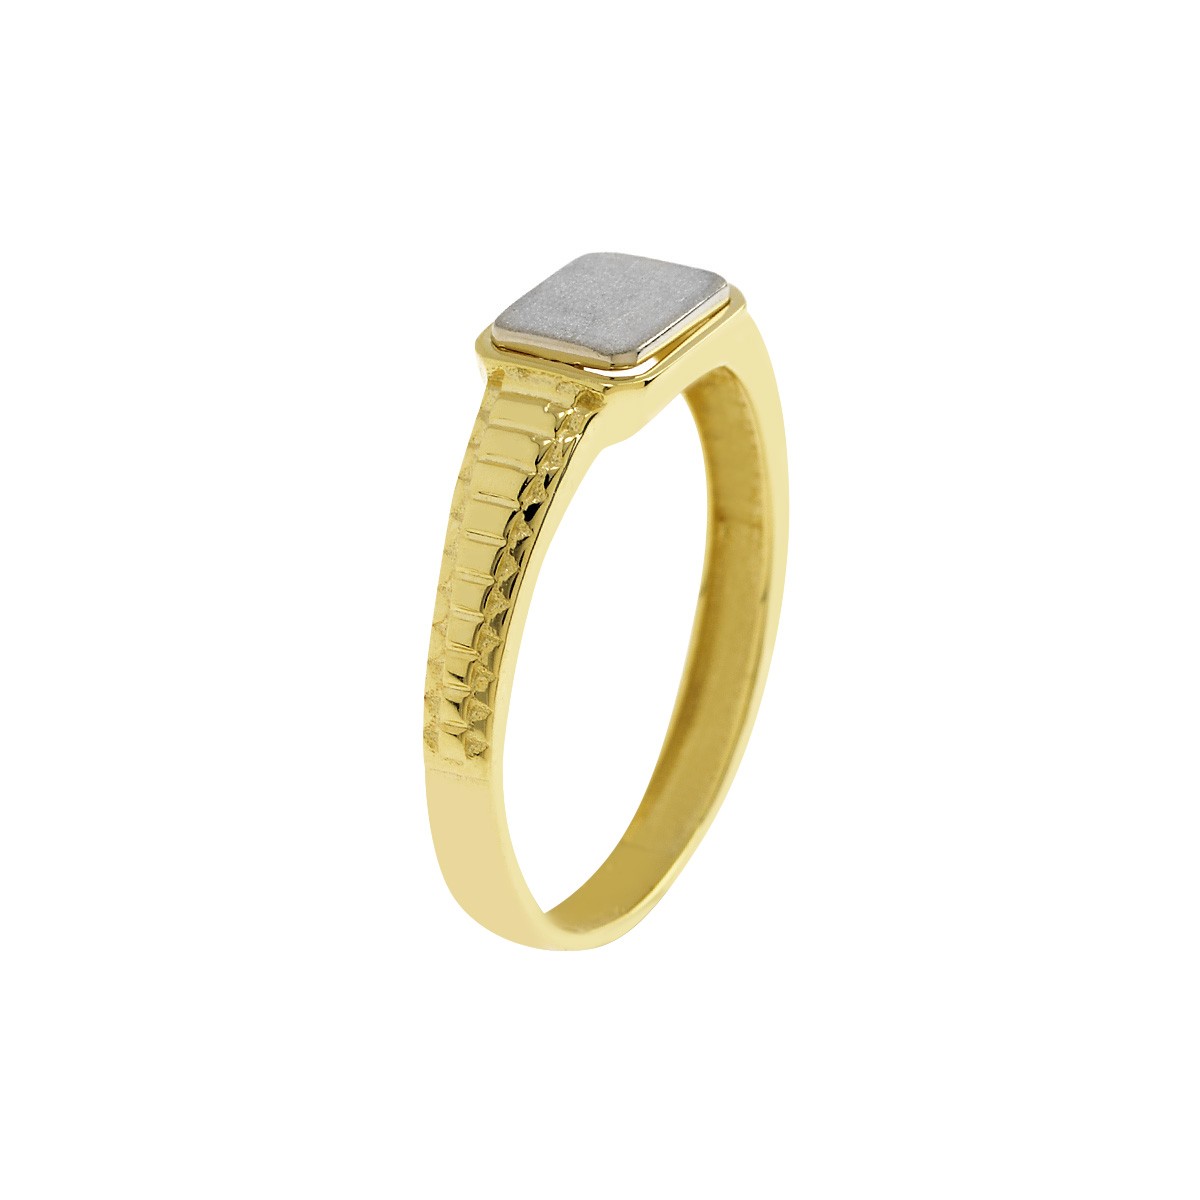 Δακτυλίδι Ανδρικό Χρυσό Κ9 με Πλάκα Κωδ: 401151